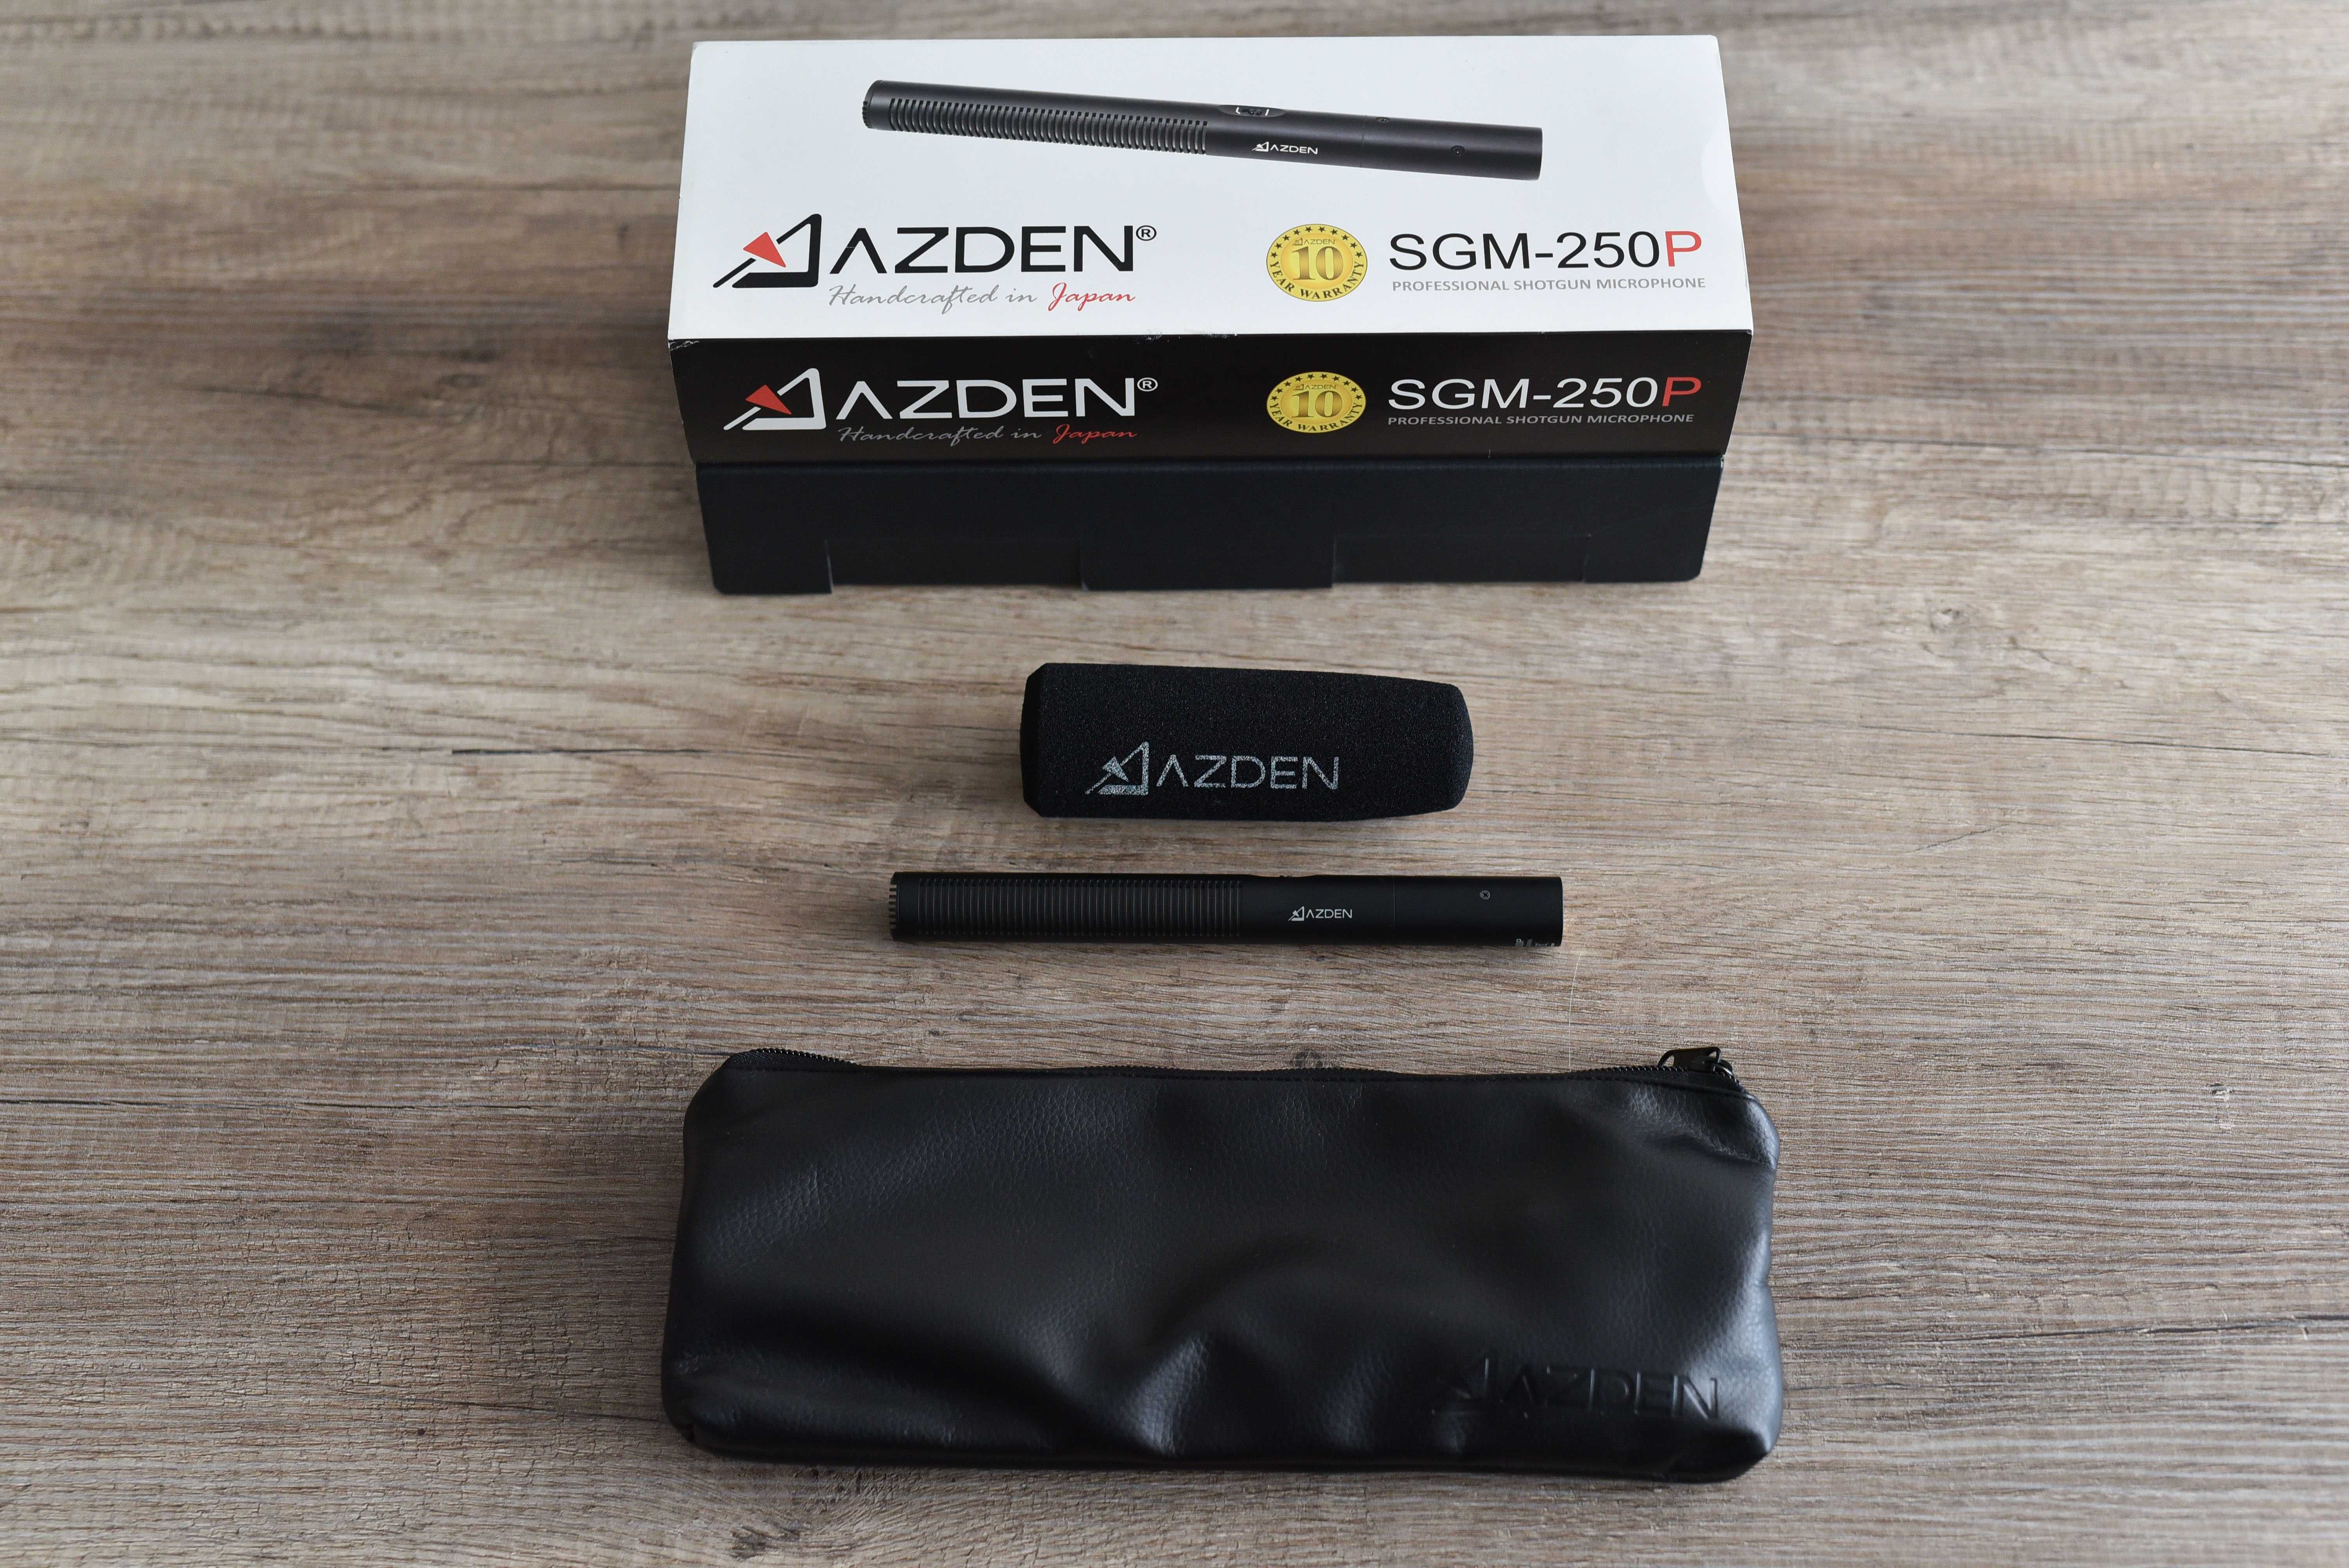 Microfon Azden SGM-250P Profesional Shotgun (Rode, Sennheiser, Sony)